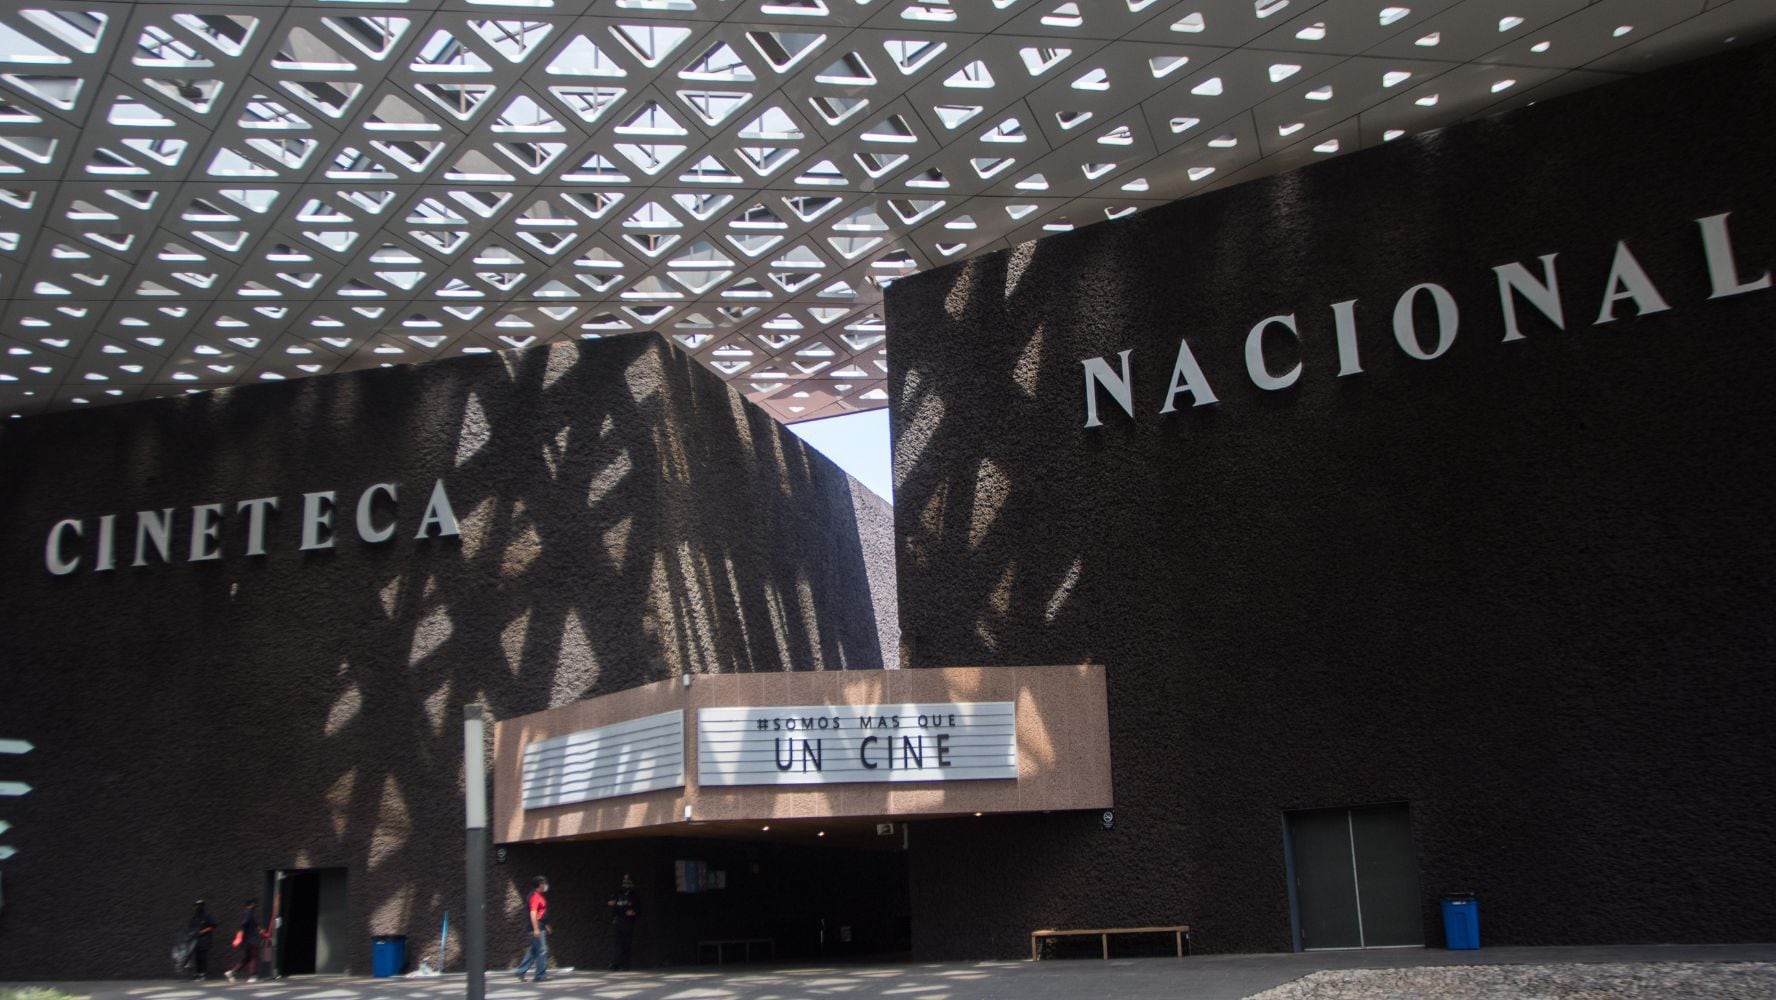 La Cineteca Nacional cumple 50 años y tendrá funciones gratuitas para celebrar su aniversario. (Foto: Cuartoscuro)